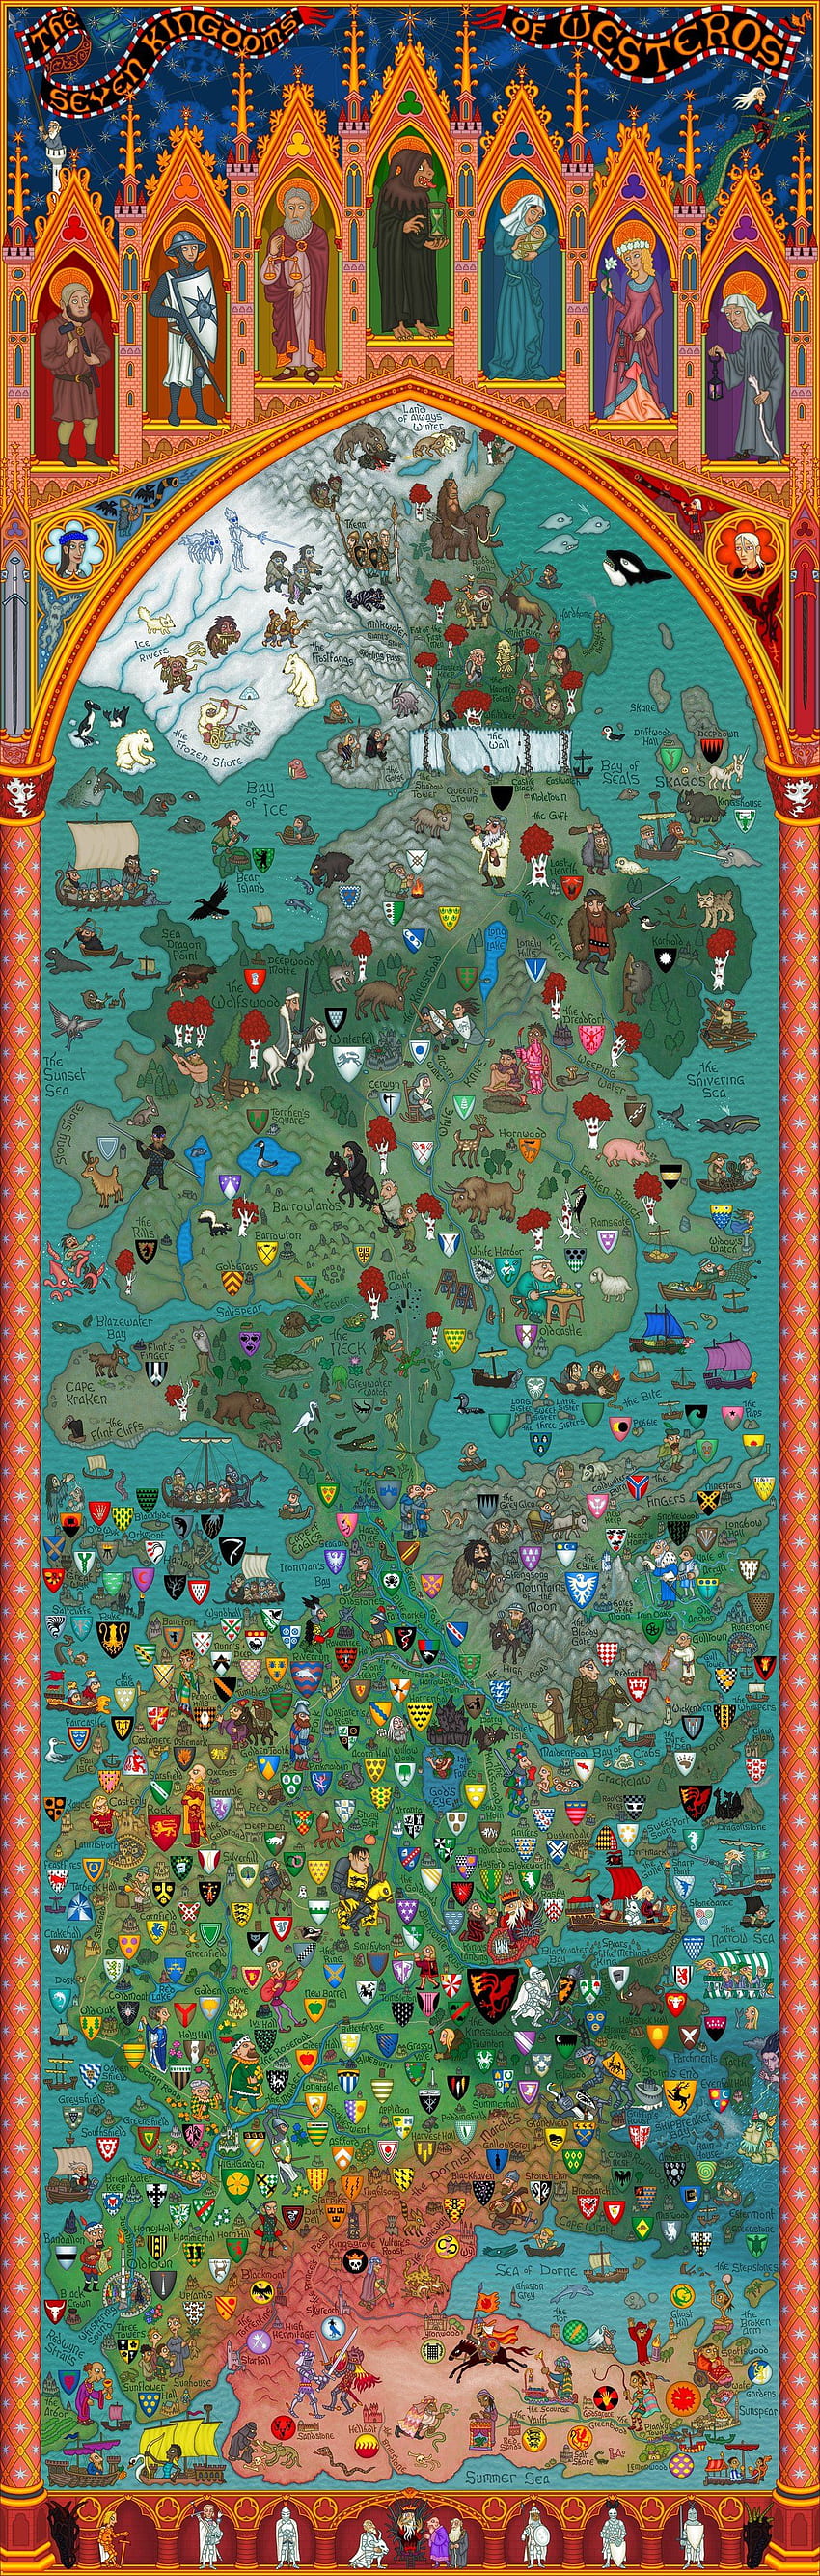 Peta terinci terbaik dari Westeros & Essos yang pernah saya lihat: gameofthrones wallpaper ponsel HD